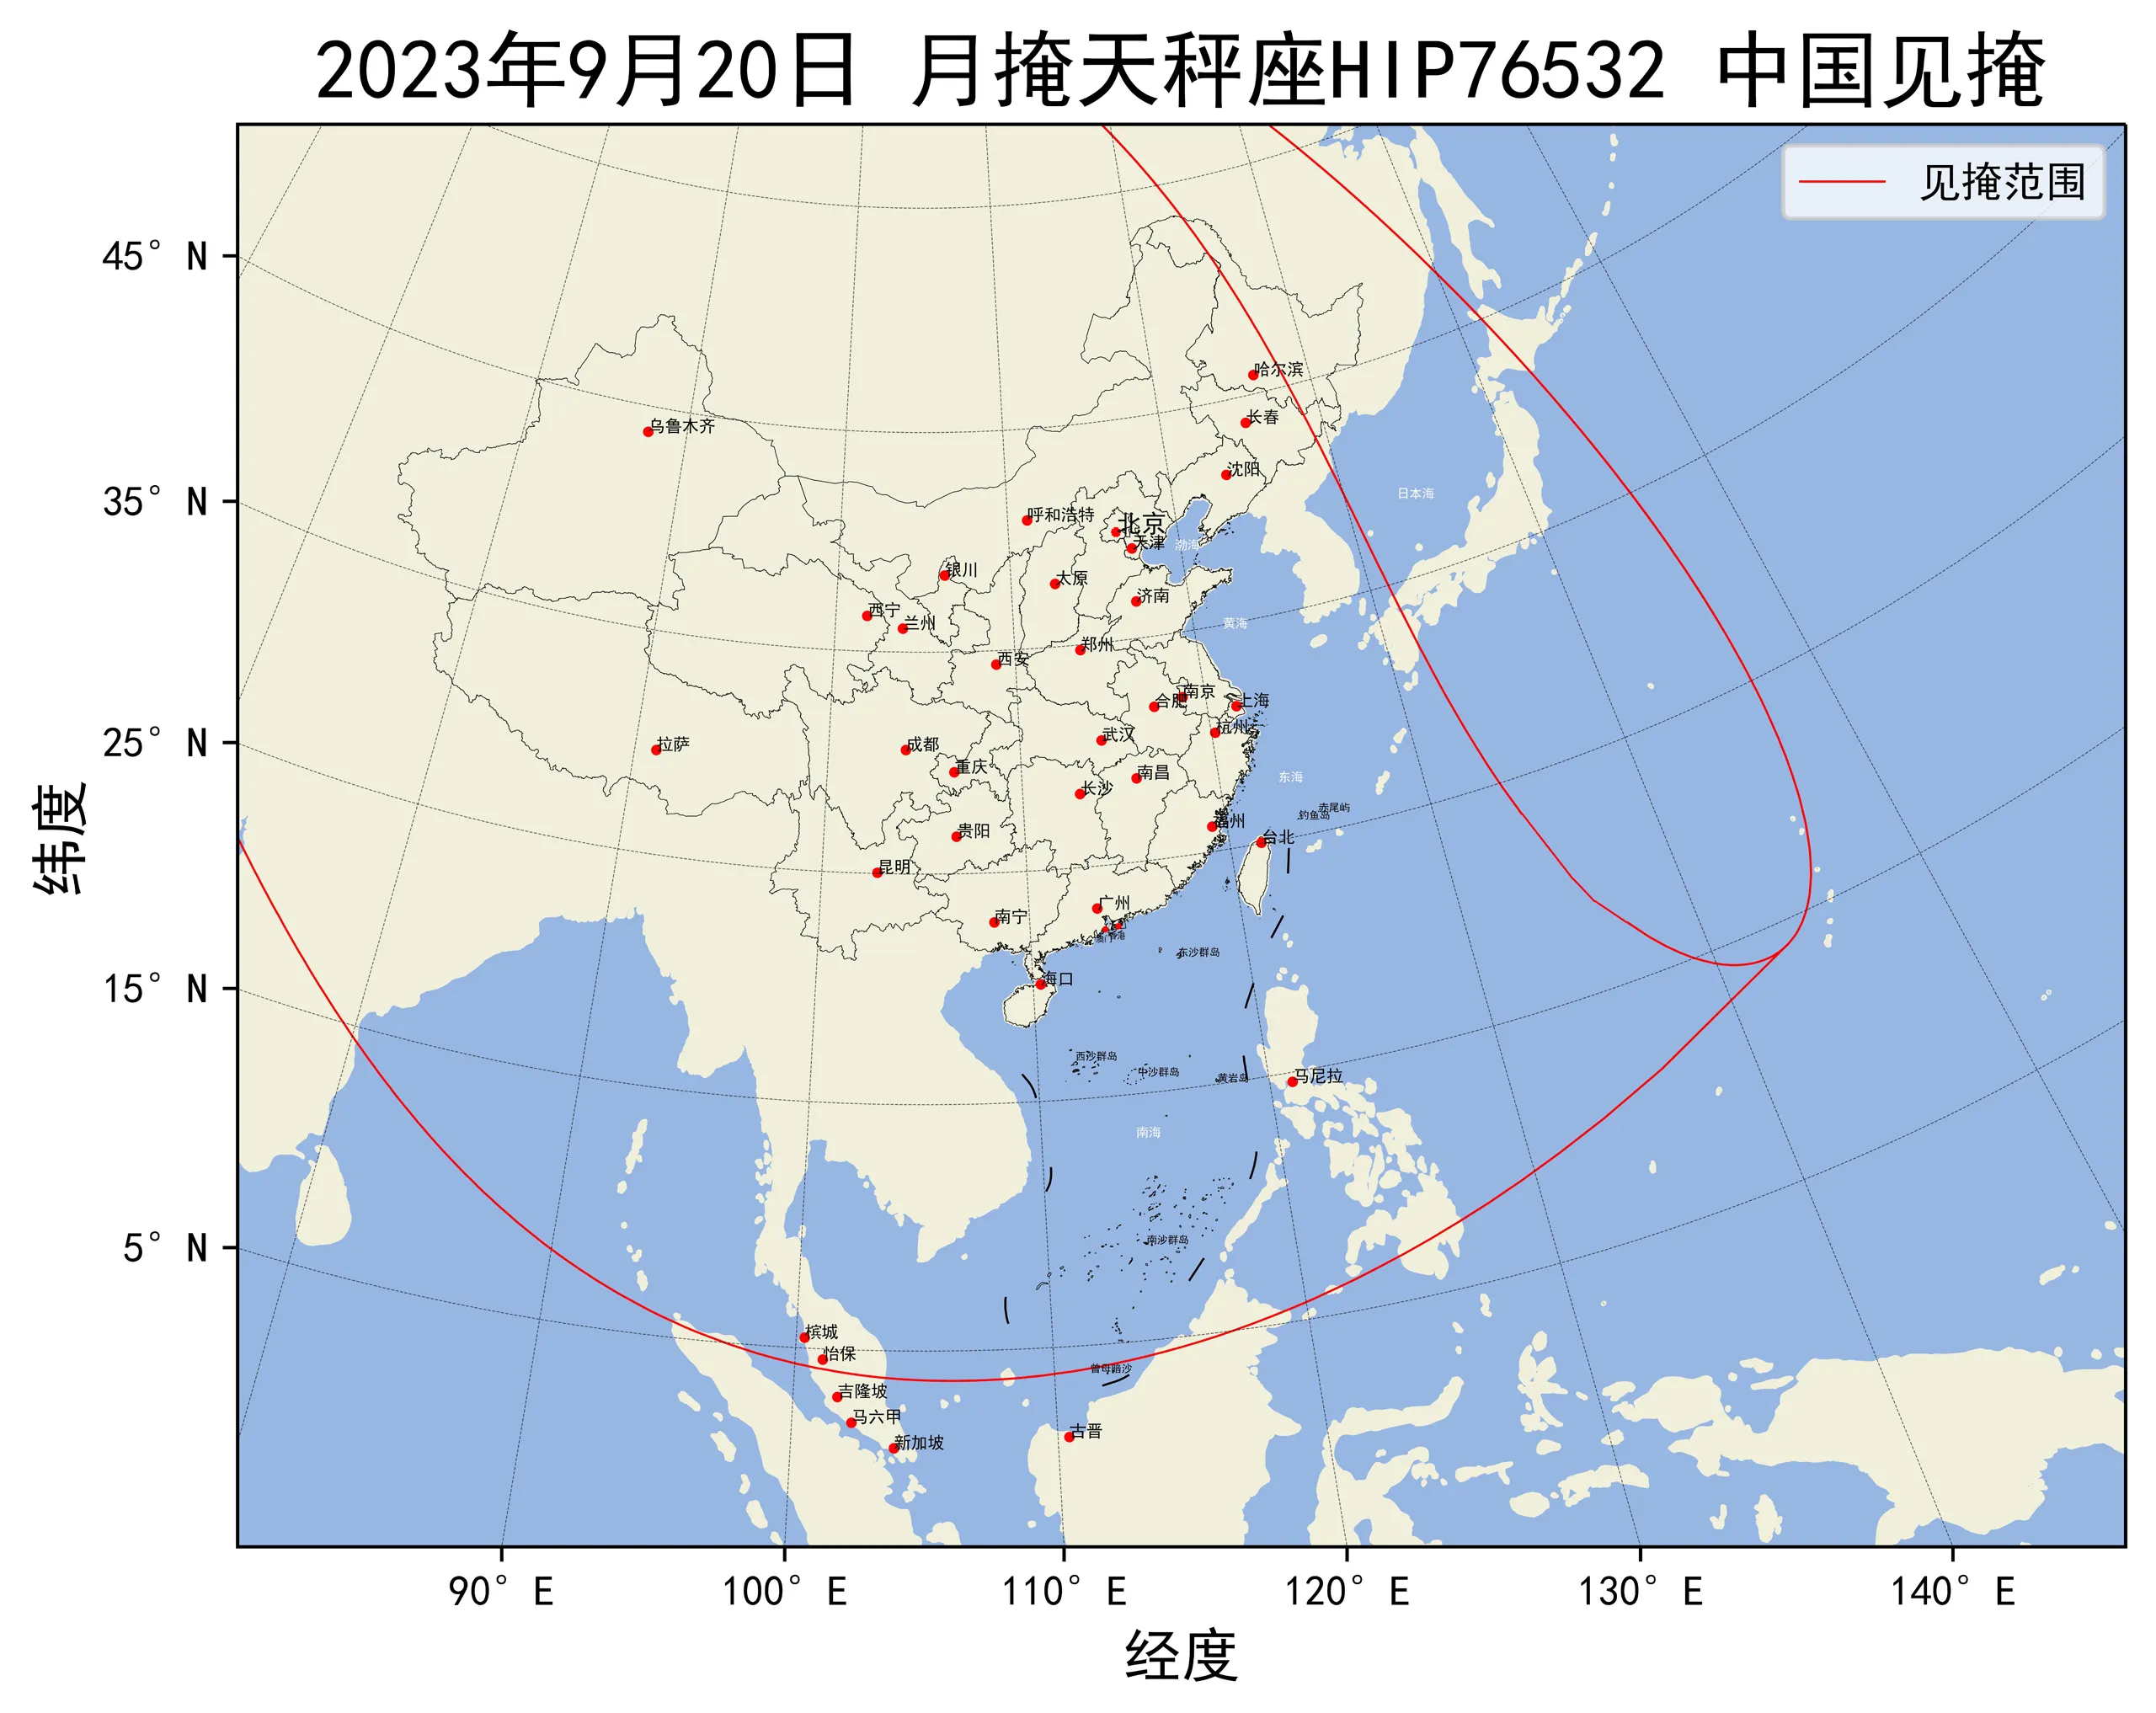 2023年9月20日月掩天秤座HIP76532中国见掩